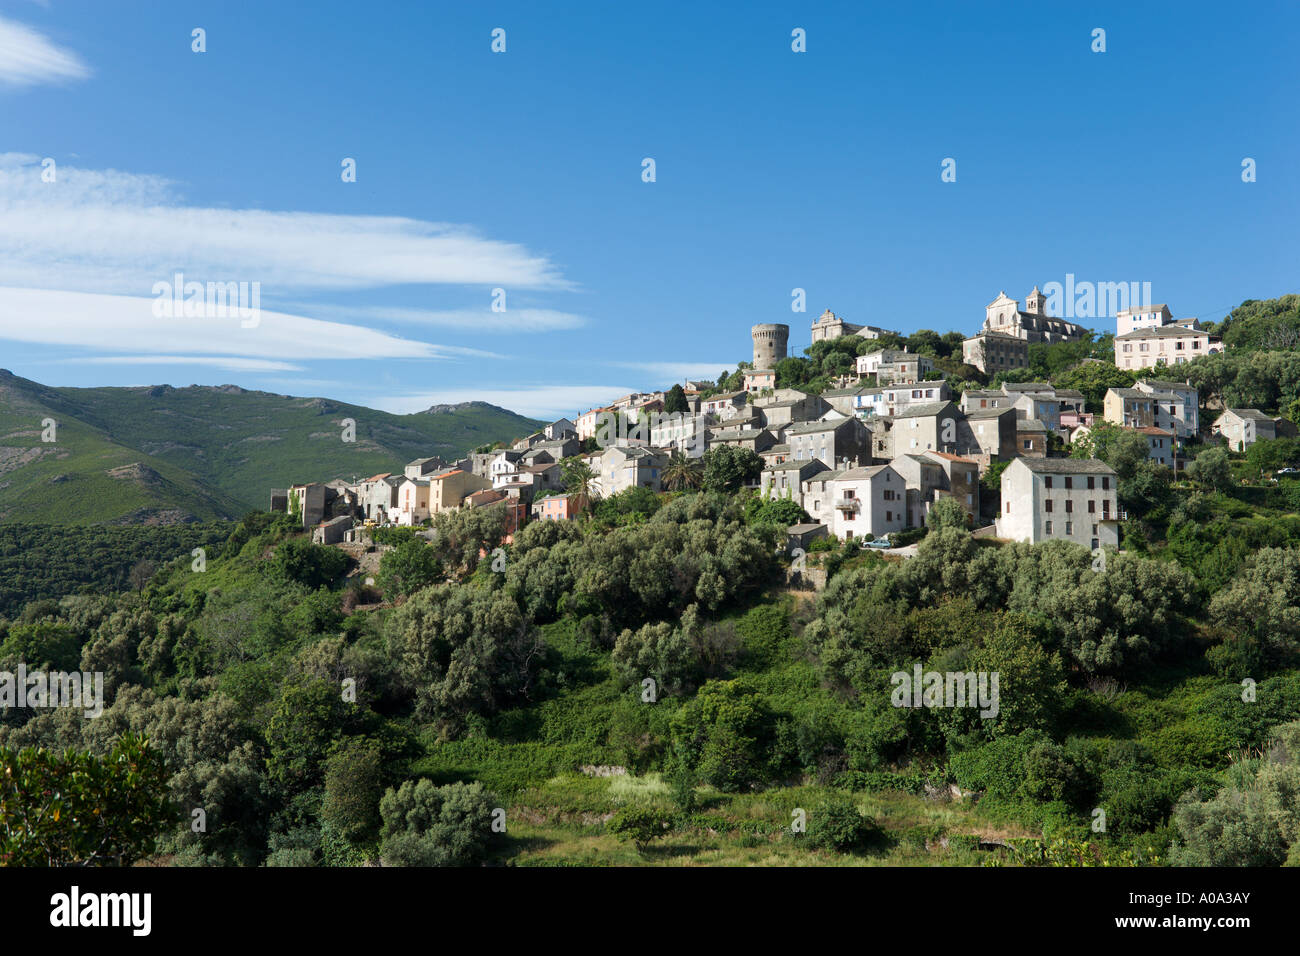 The traditional mountain village of Rogliano, Cap Corse, Corsica, France Stock Photo